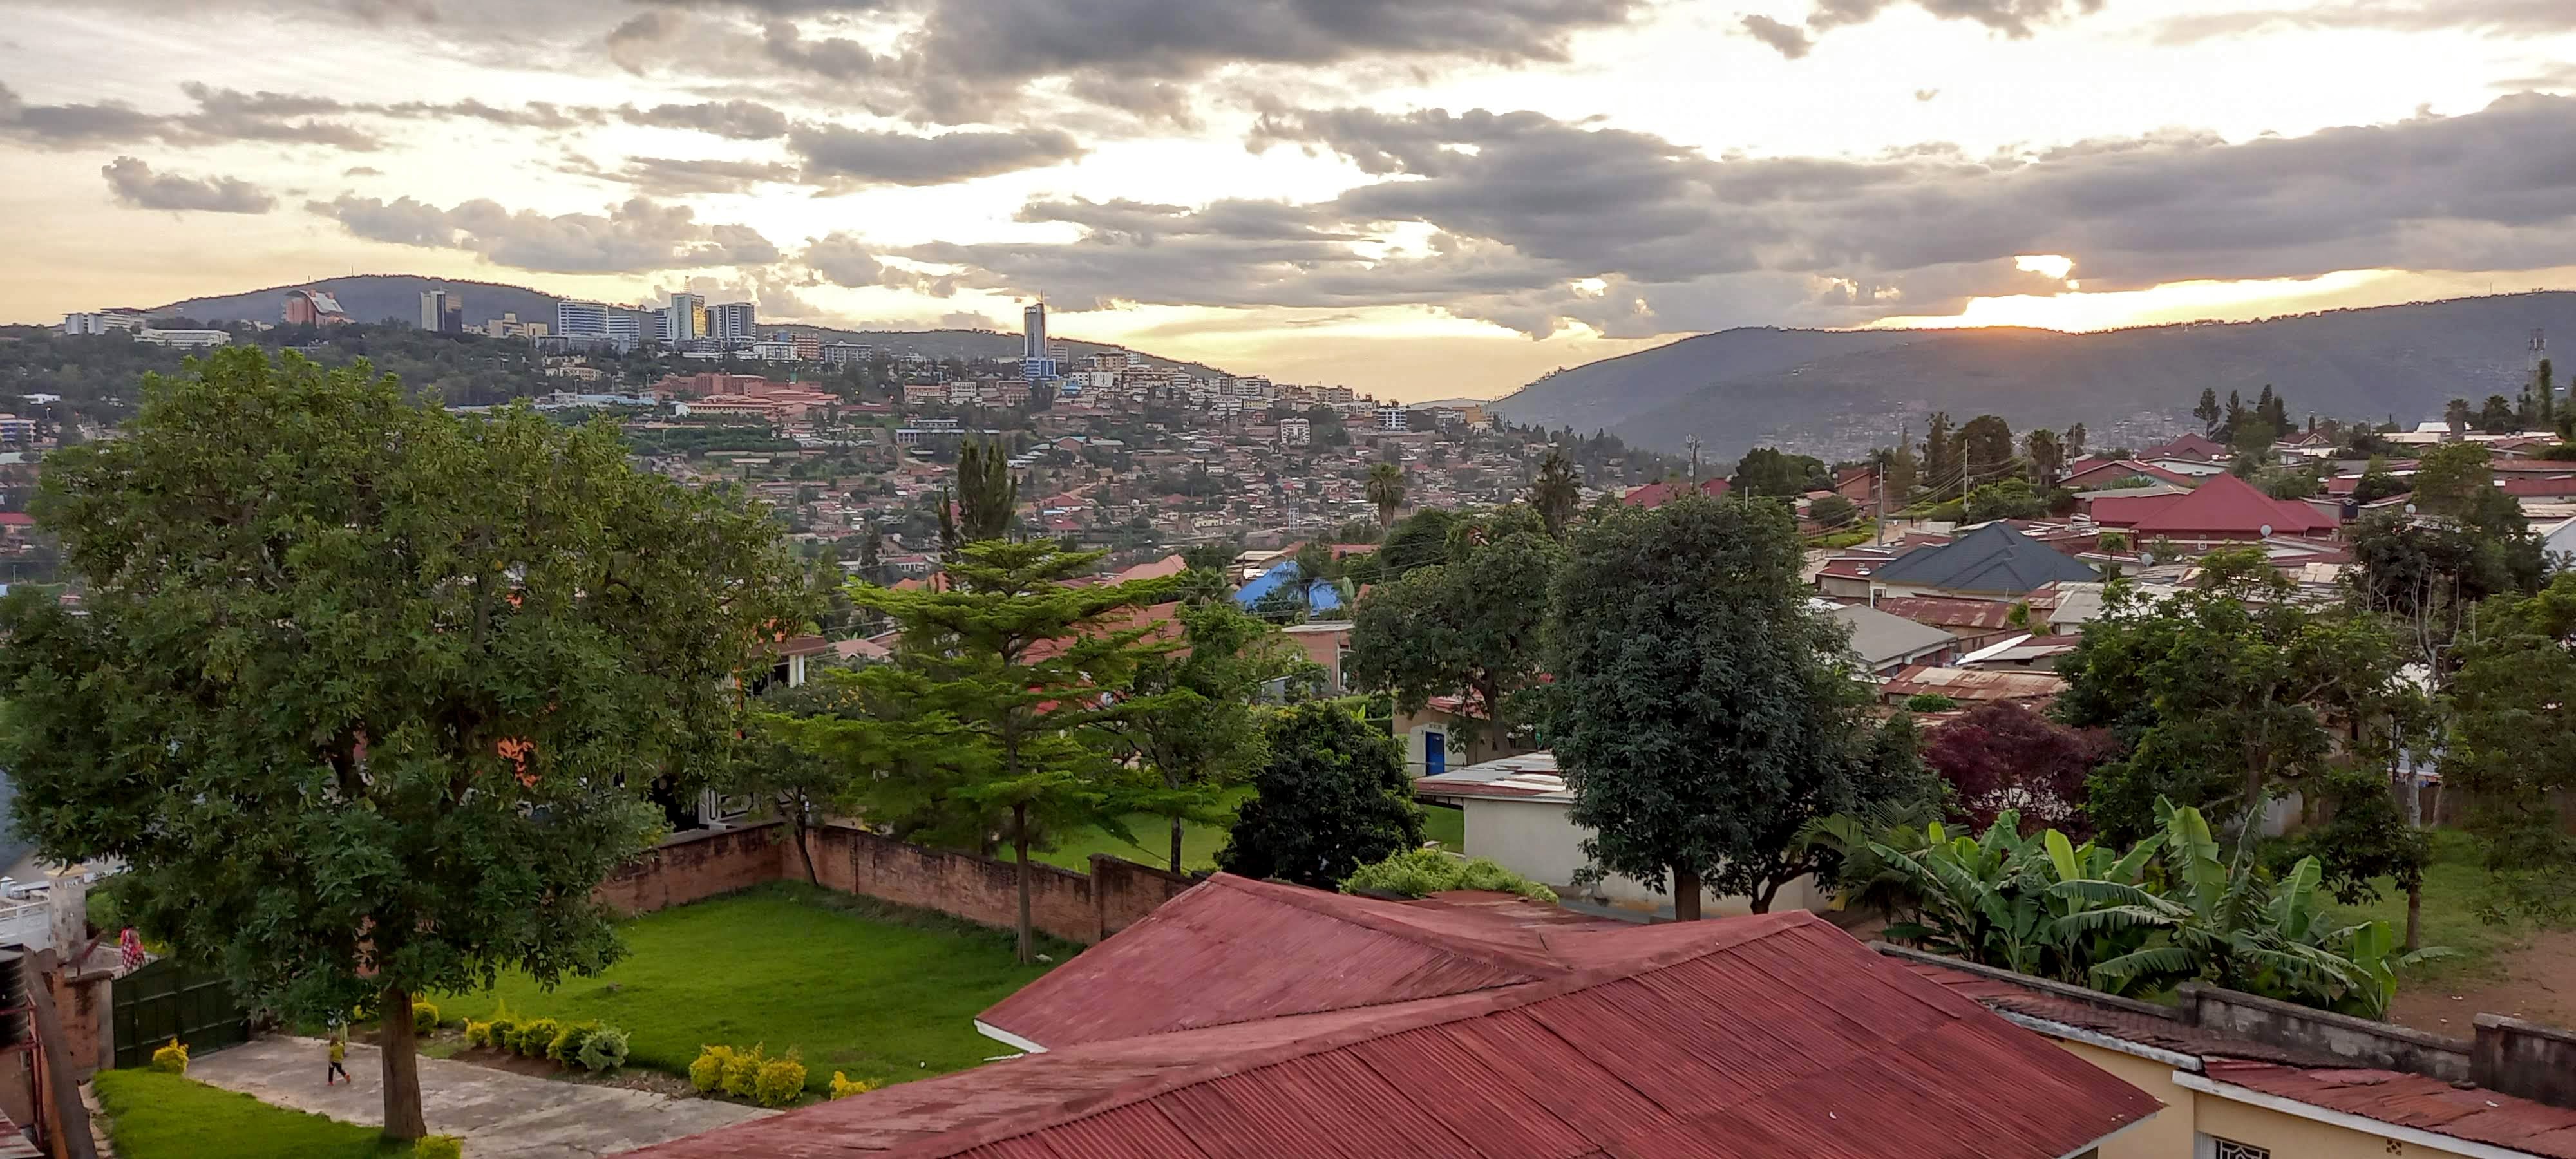 Utsikt över staden Kigali